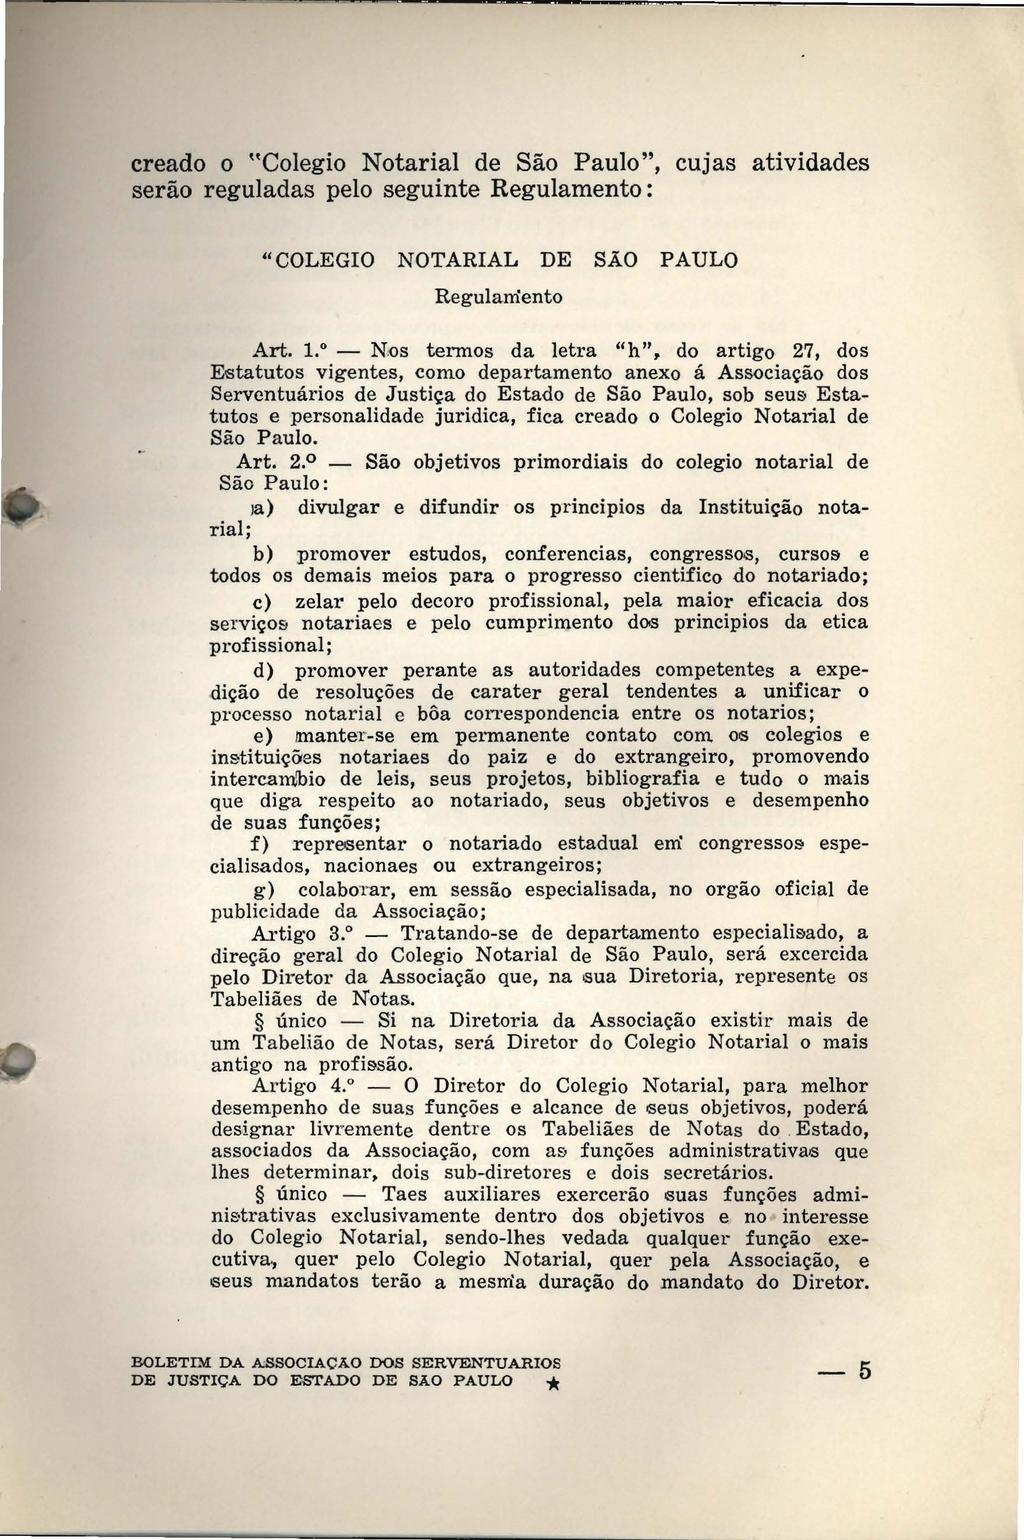 creado o "Colegio Notarial de São Paulo", cujas atividades serão reguladas pelo seguinte Regulamento: "COLEGIO NOTARIAL DE SÃO PAULO Regulamento Art. 1.